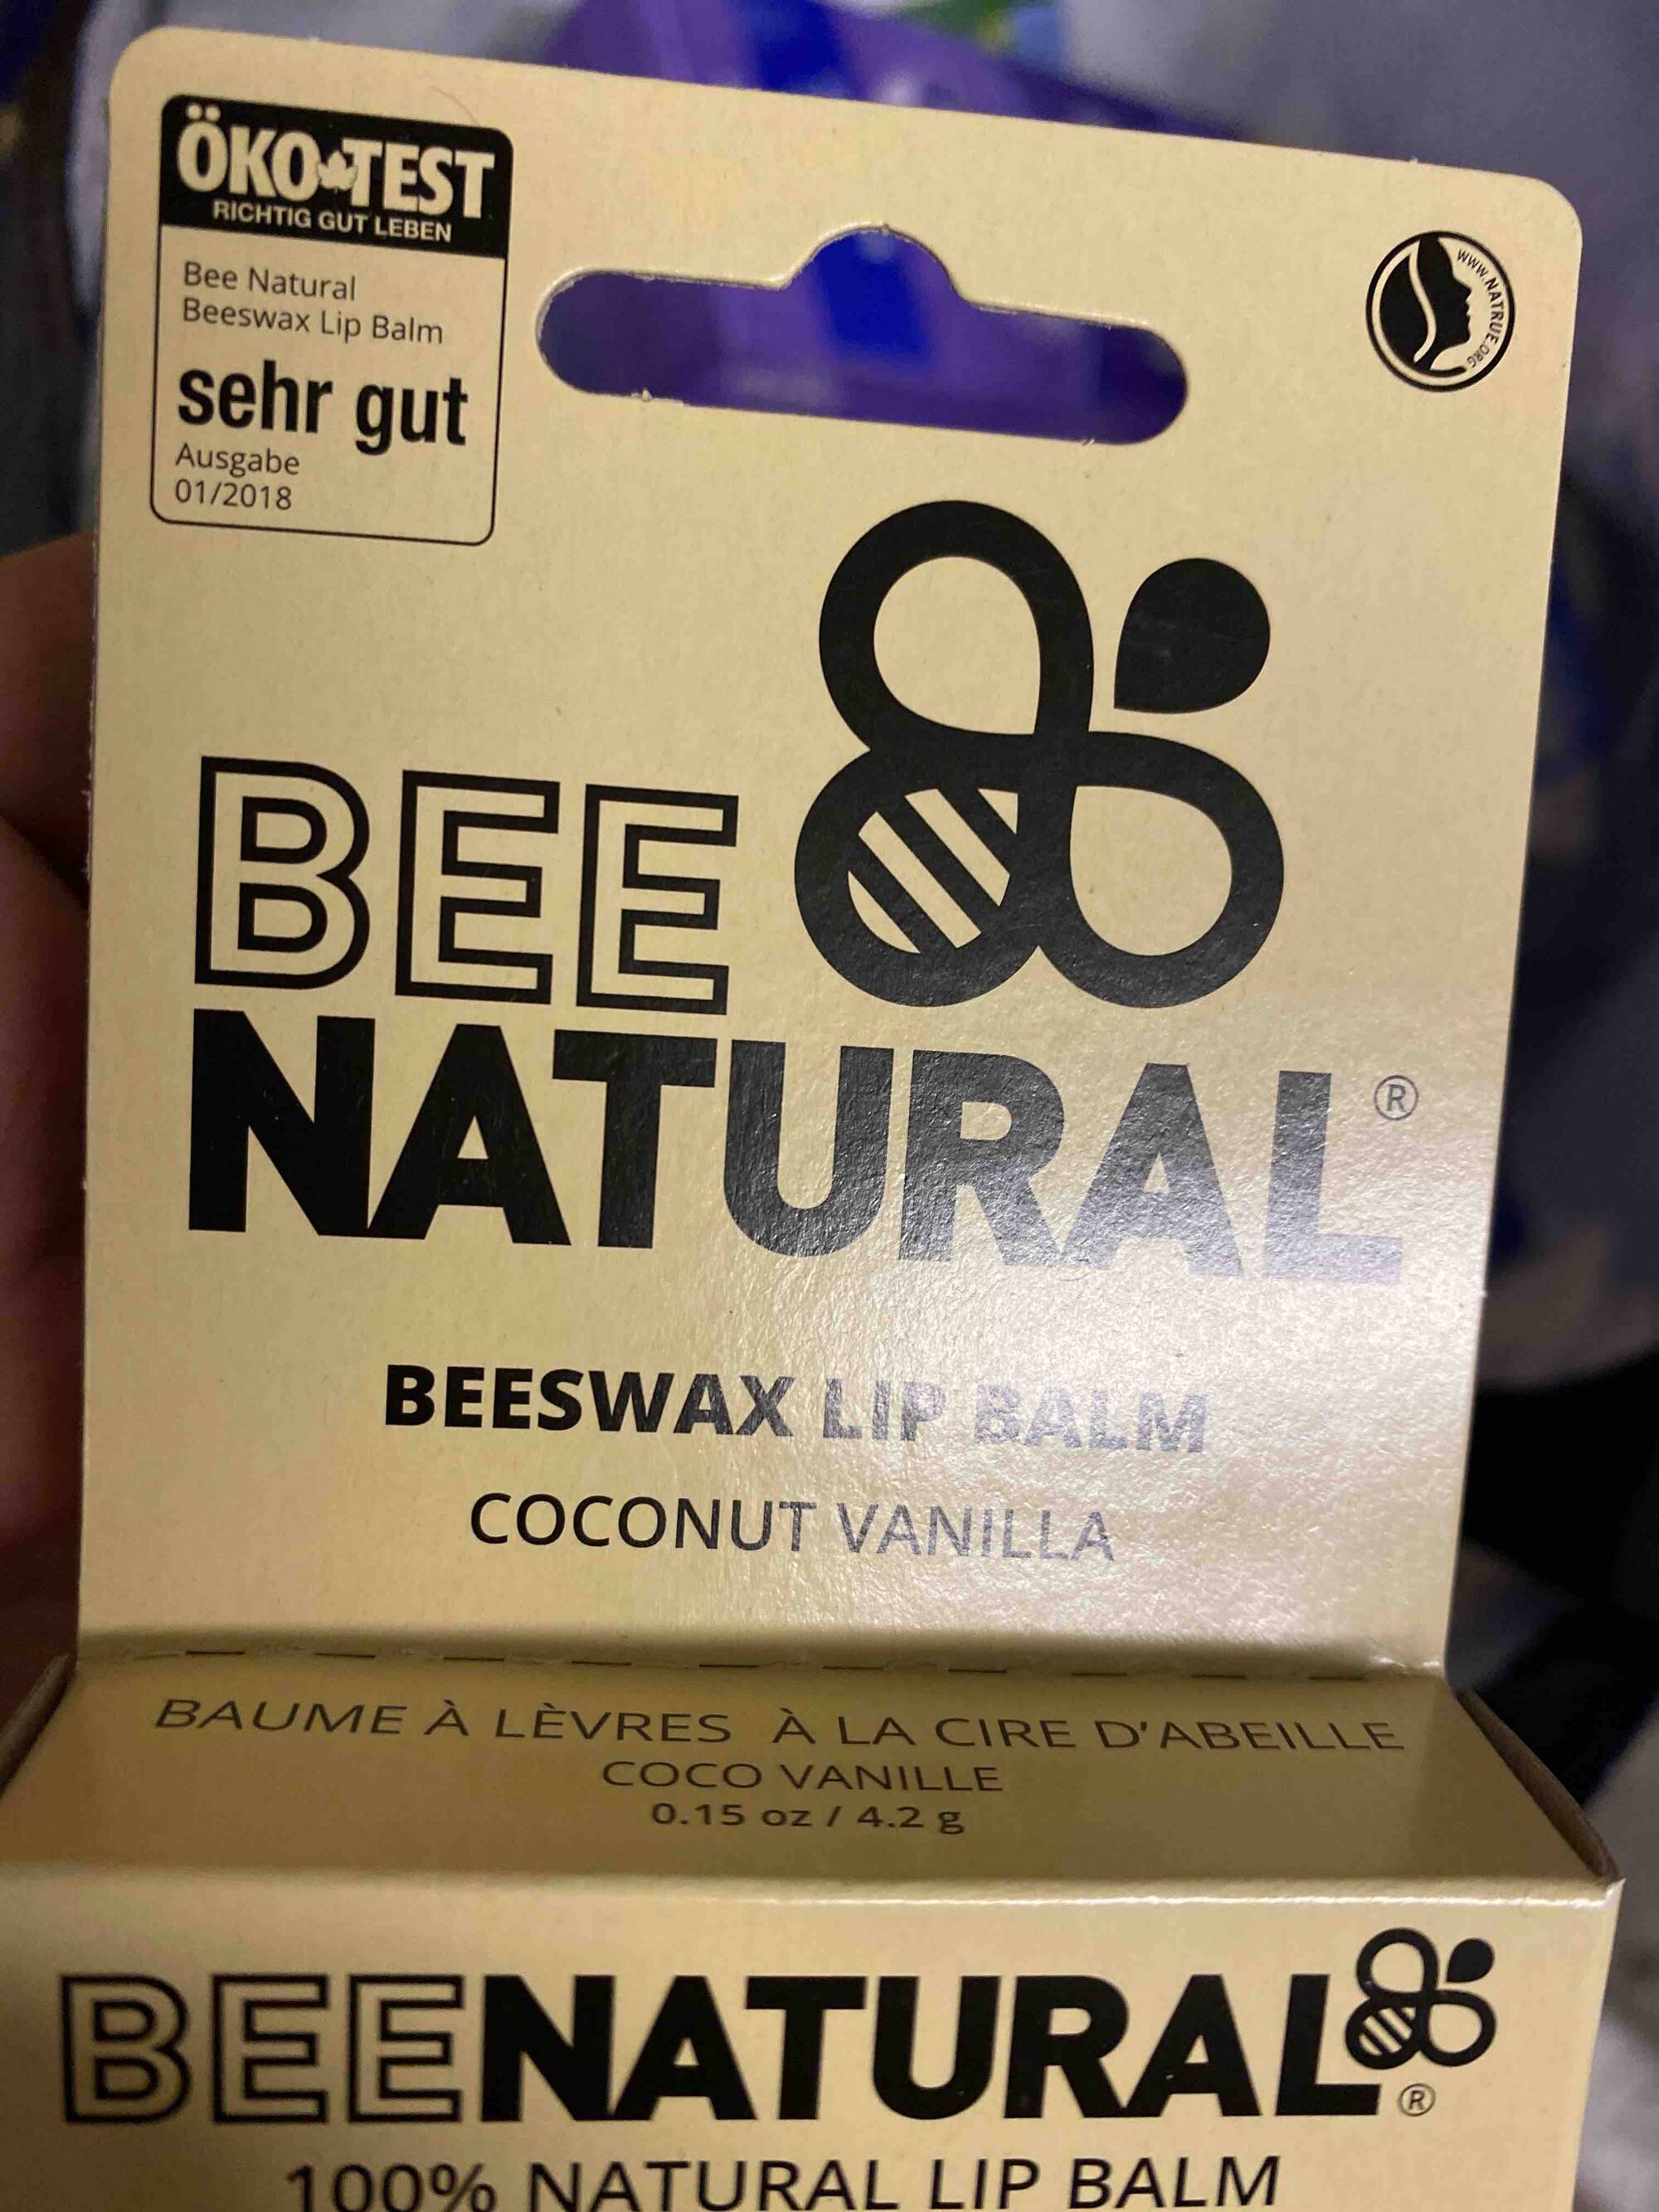 BEE NATURAL - Baume à lèvres à la cire d'abeille coco vanille